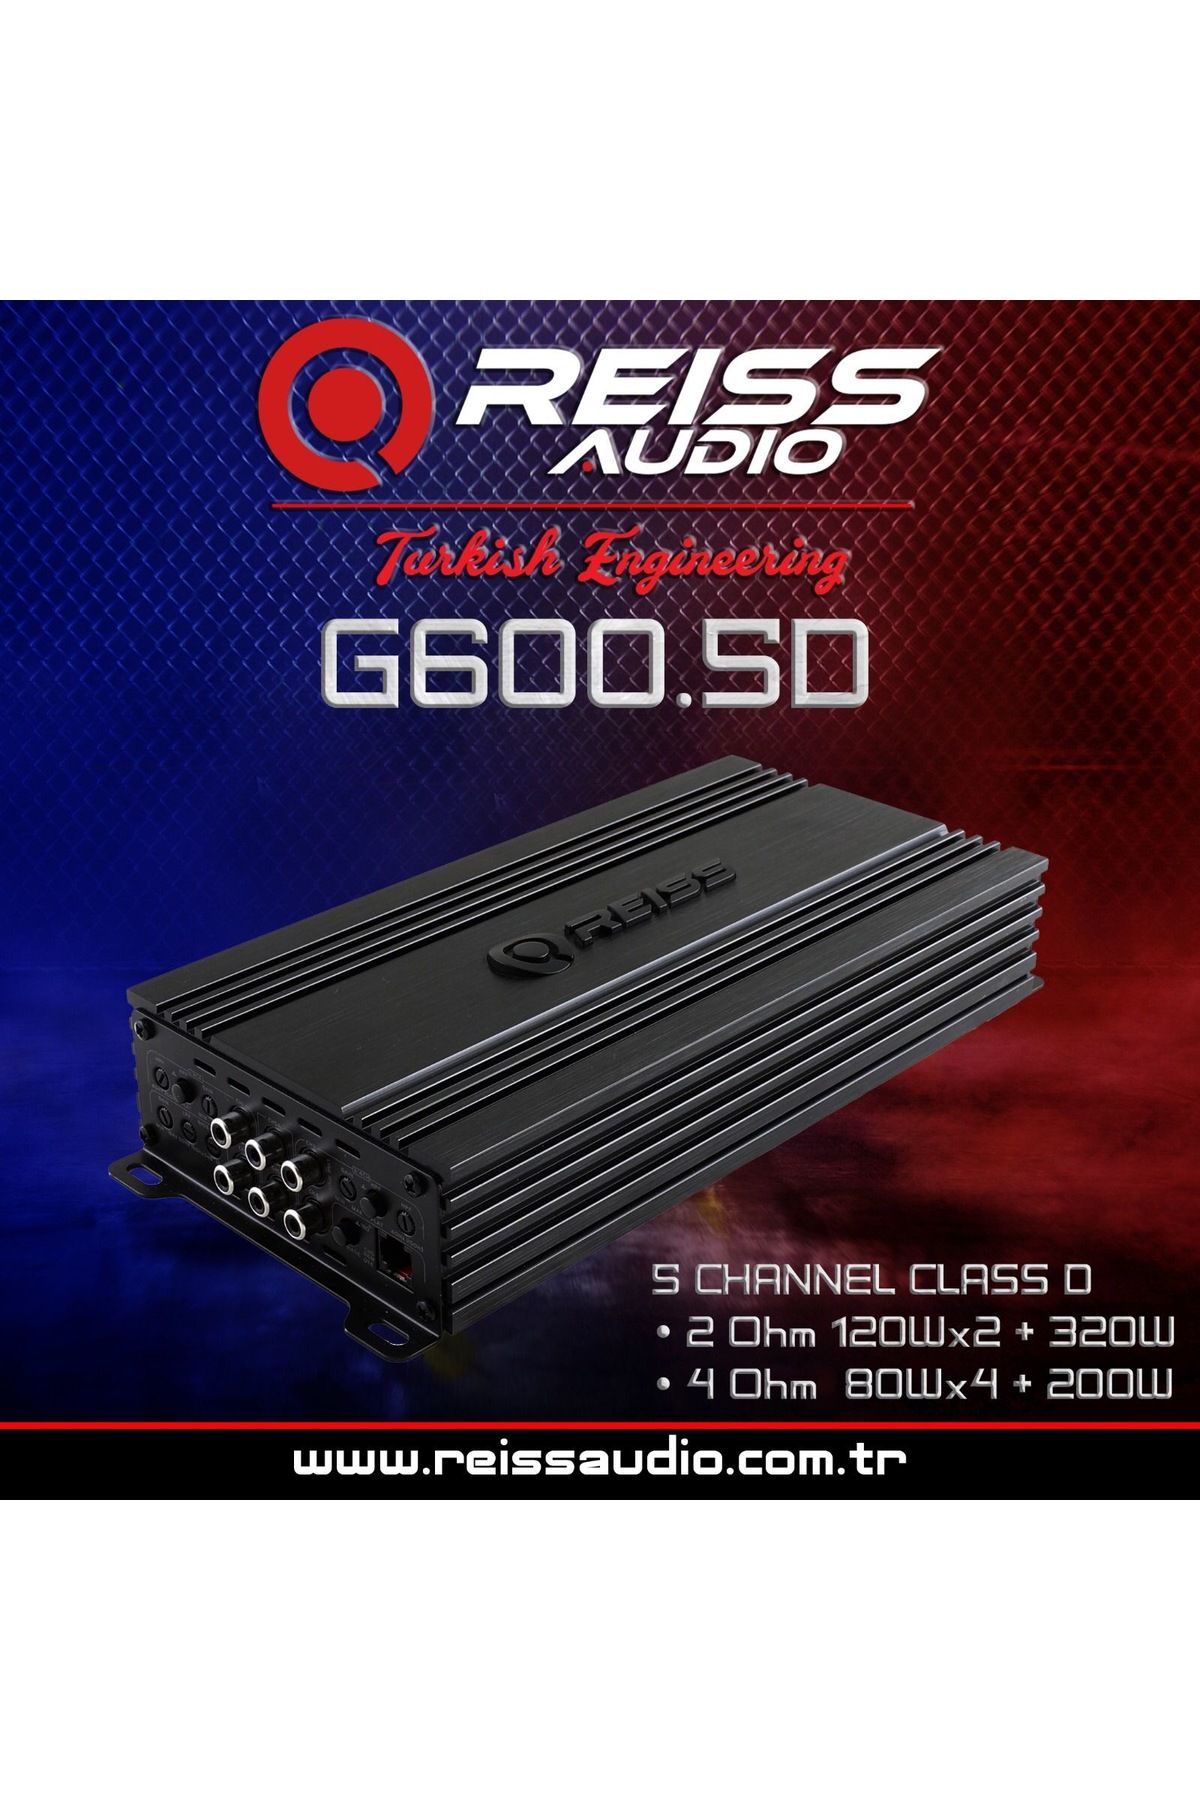 Reiss RS-G600.5D 5KANAL PROFESYONEL BAS KONTROLLÜ OTO AMFİ 4 Ohm Stereo 80Wx4+200Wx1 - 2 Ohm 120Wx4+320Wx1